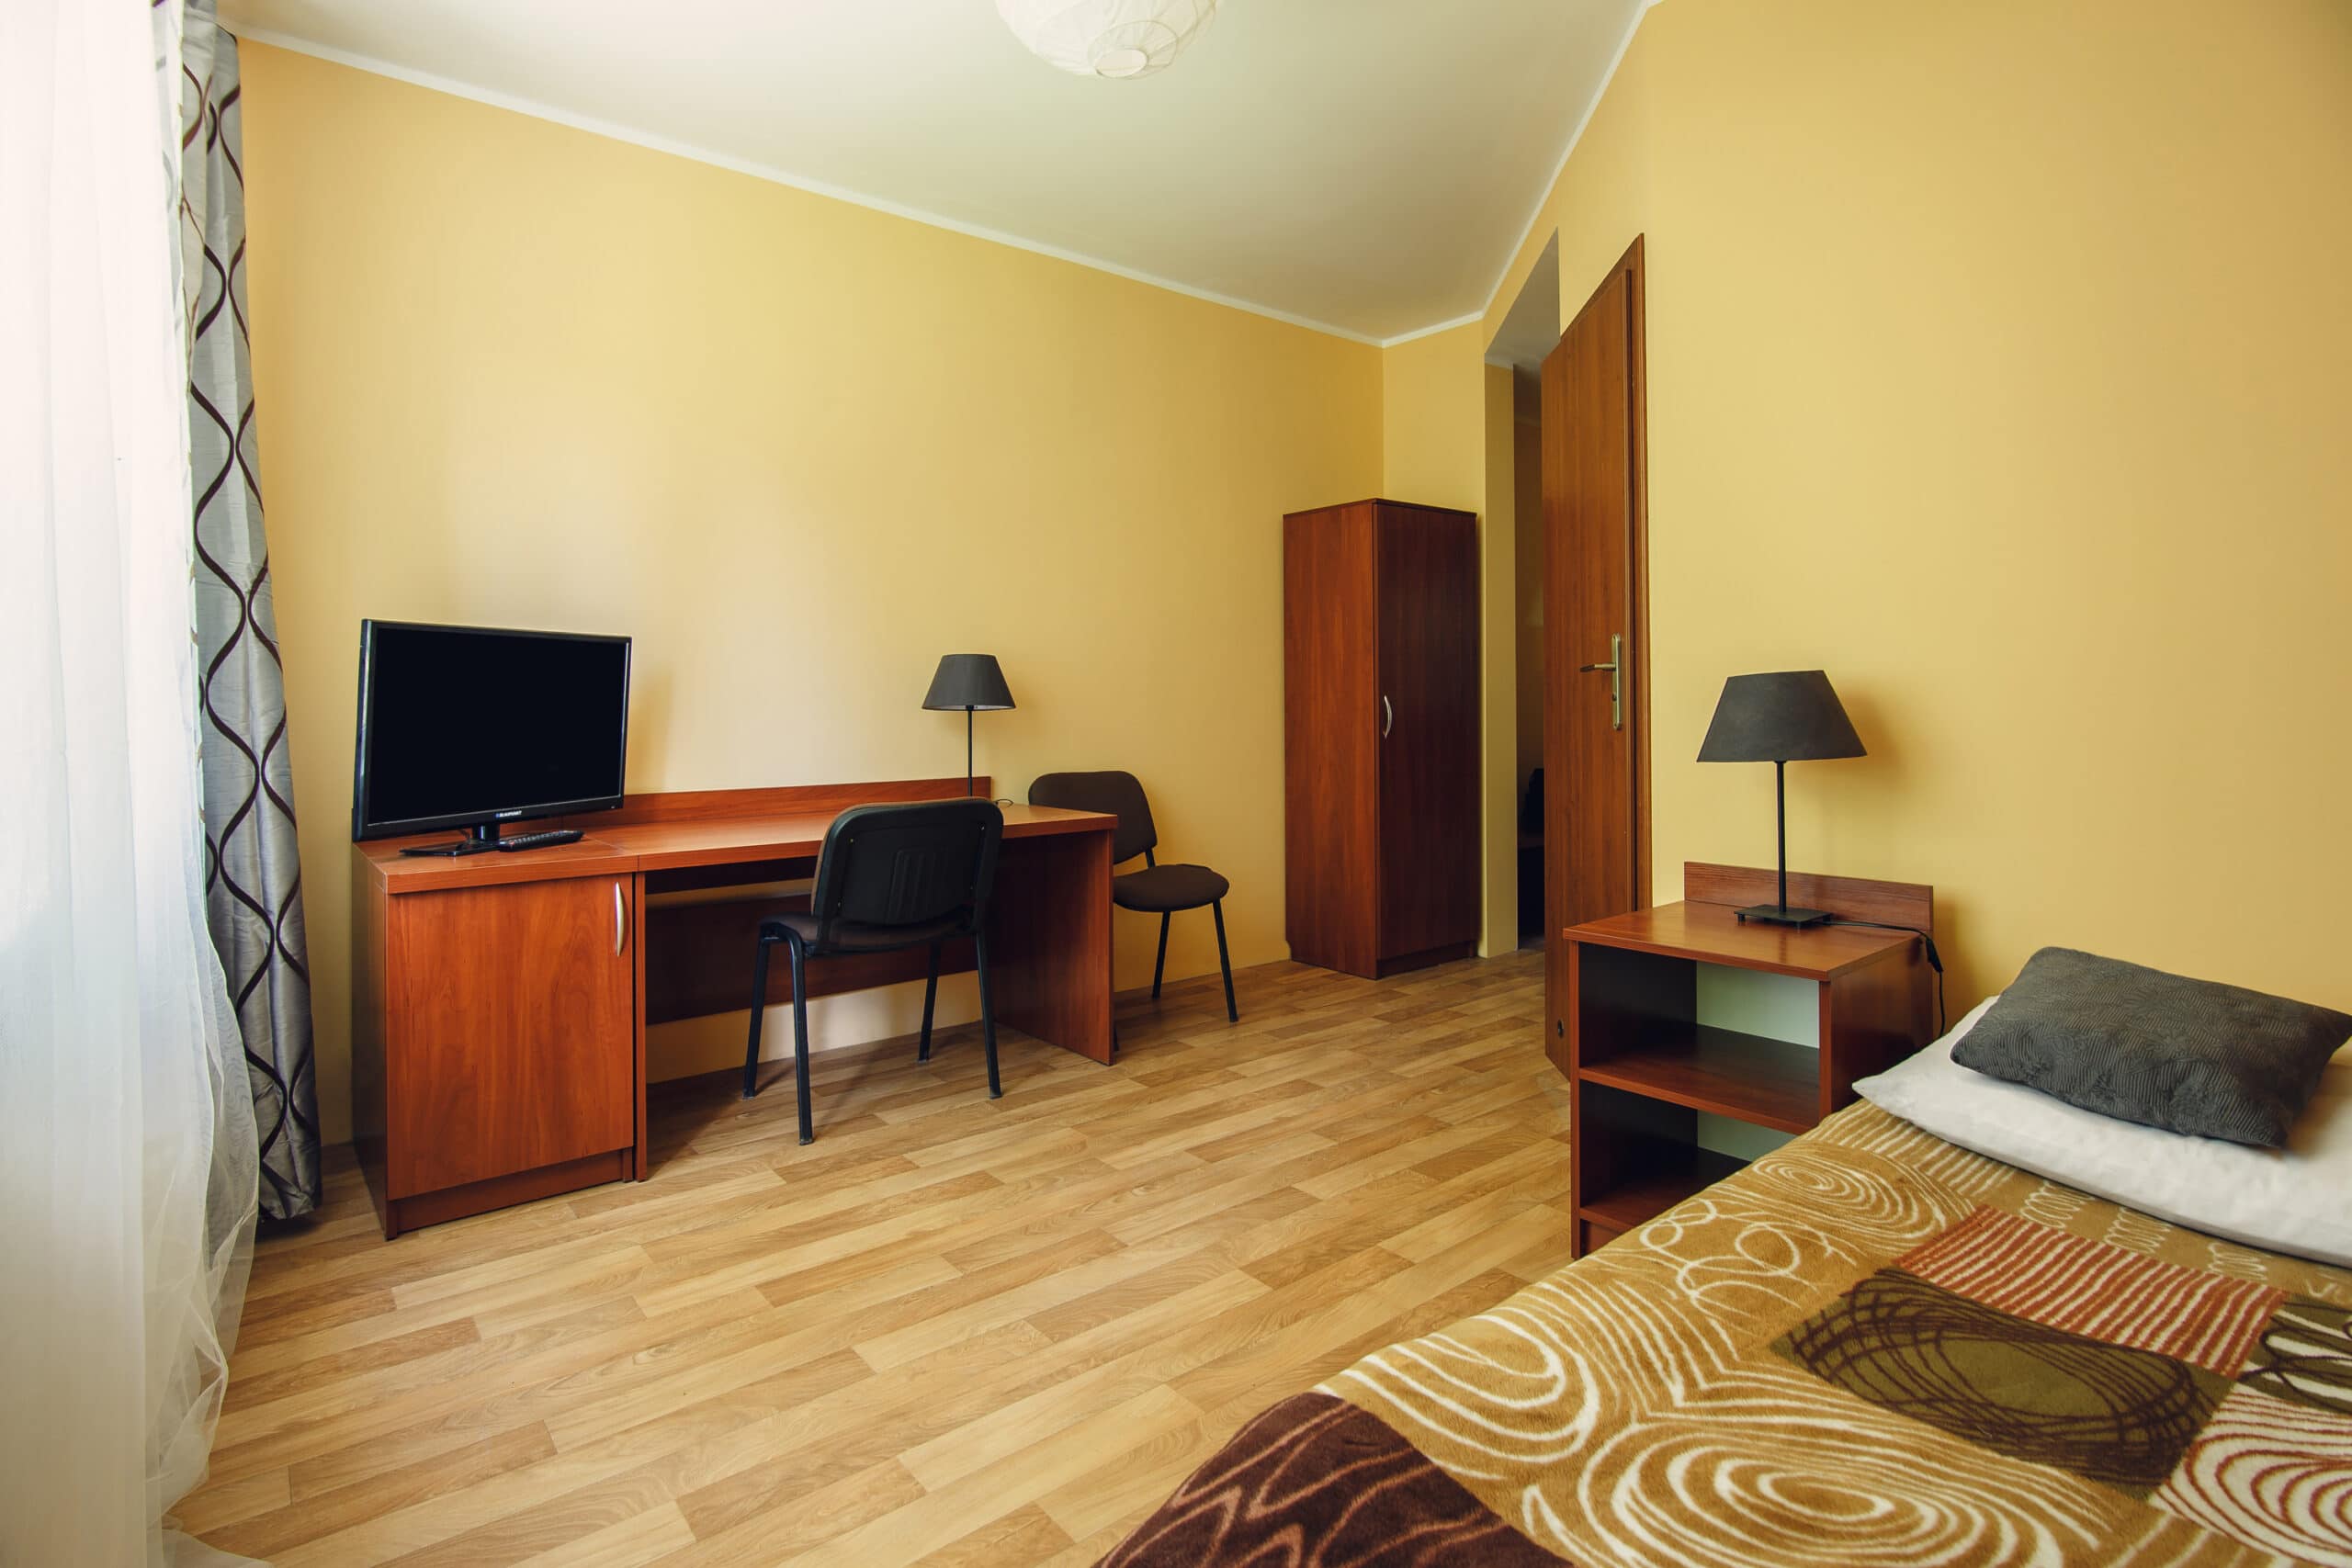 kwatery pracownicze szczecin - teraz w promocji za 29zł od osoby w pokojach 3 i 4 osobowych. W hostelu w Szczecinie dostępne są też pokoje z łazienką oraz pokoje 1 i 2 osobowe.